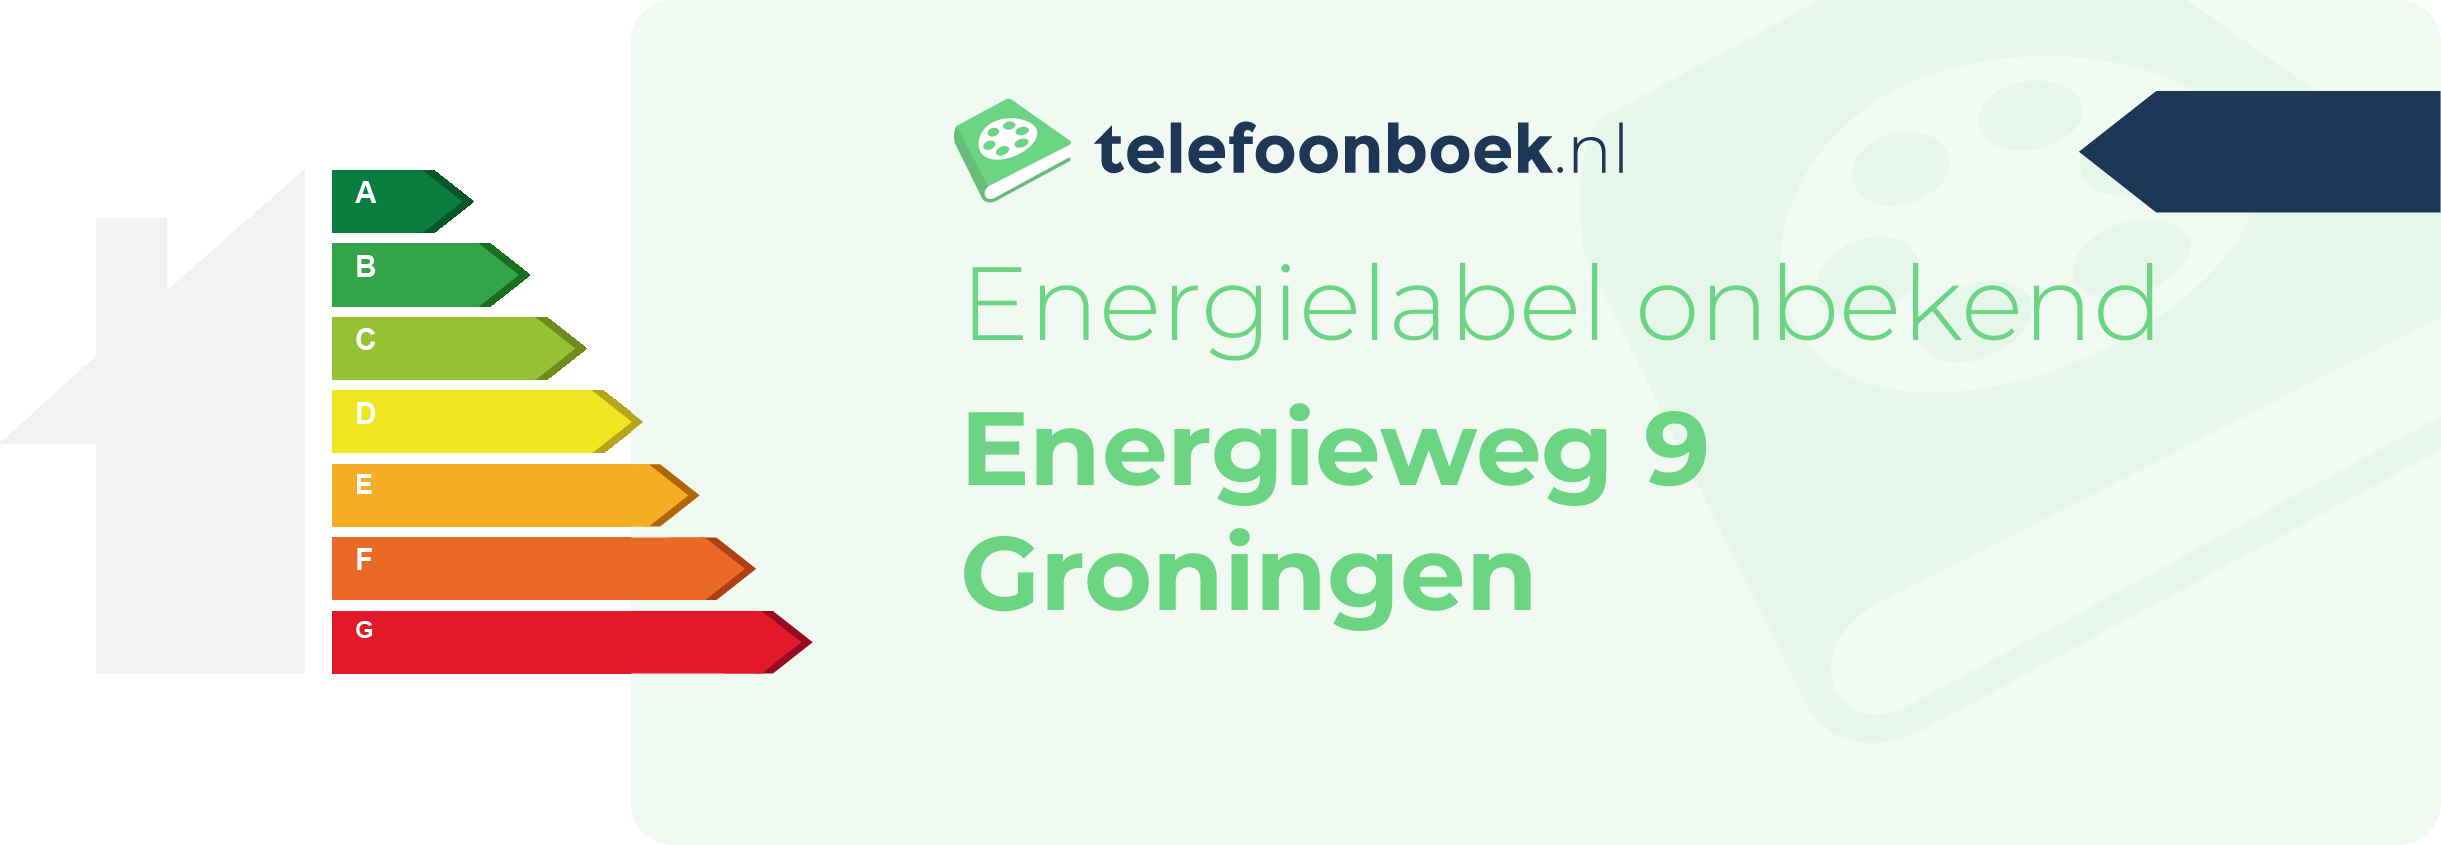 Energielabel Energieweg 9 Groningen